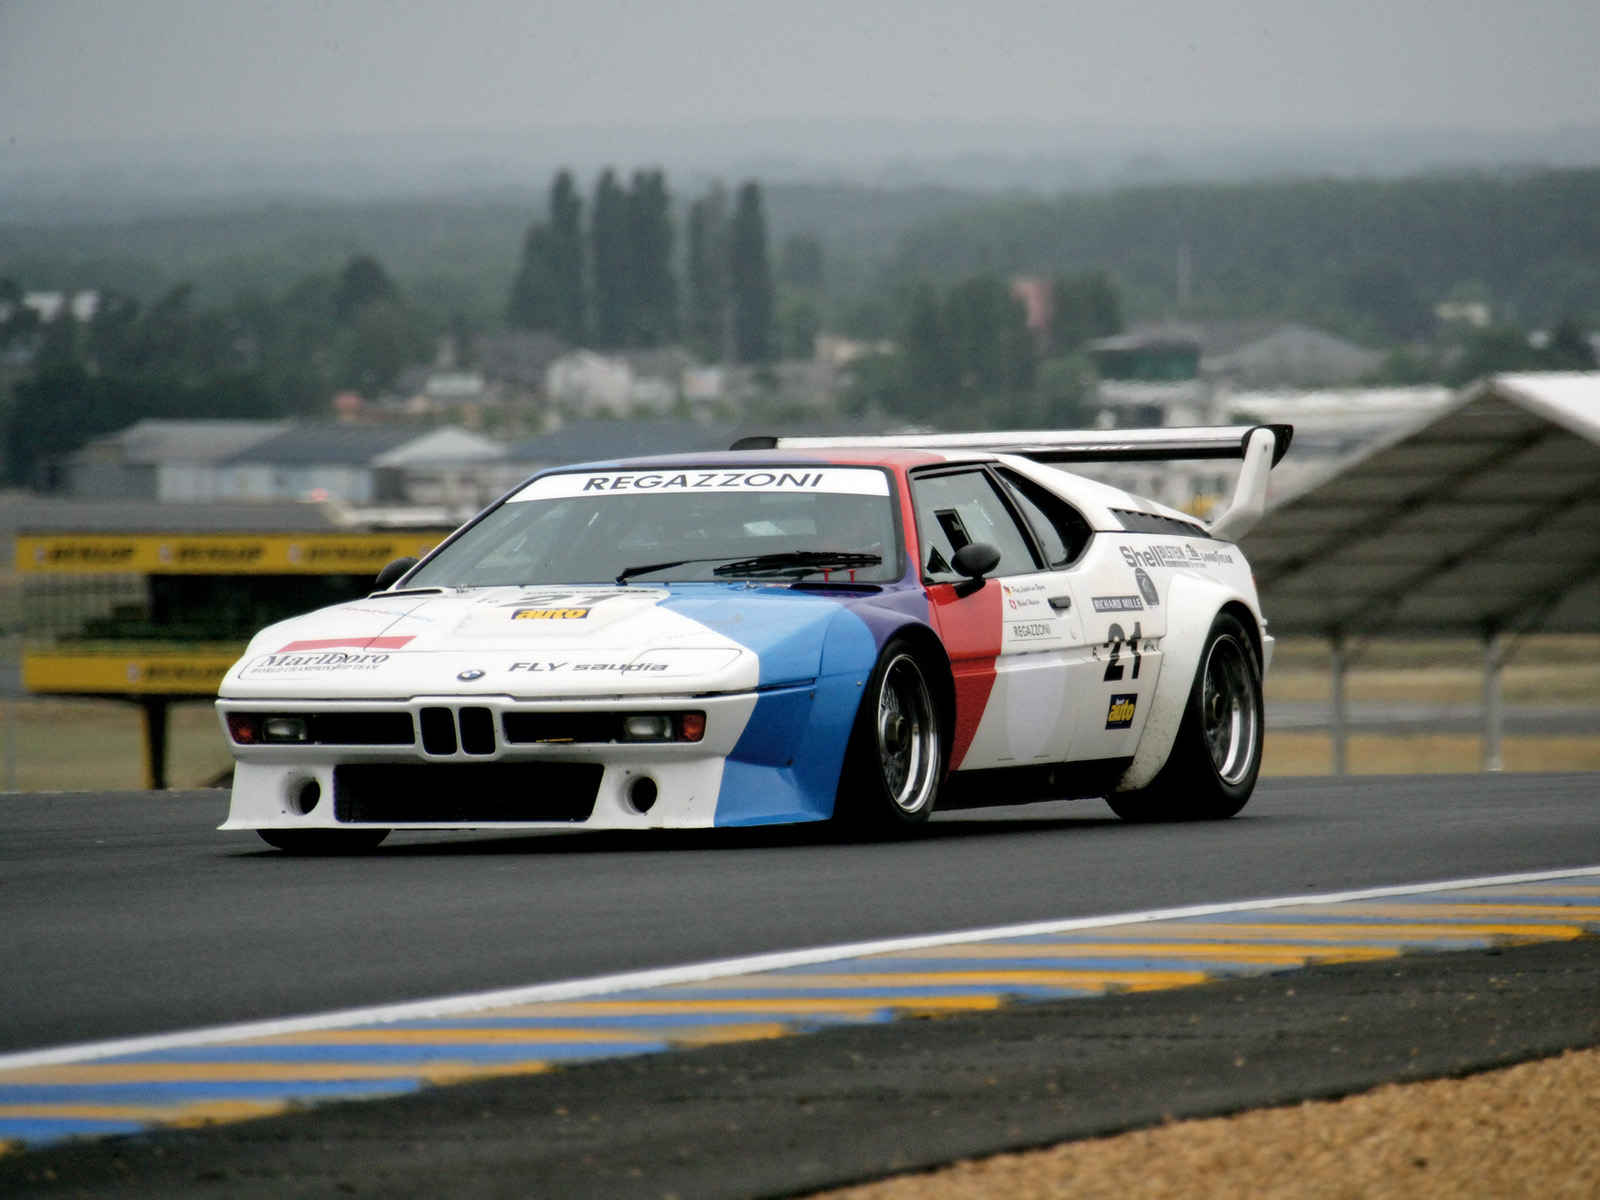 BMW-Le-Mans-Classic-1972-1979-BMW-M1